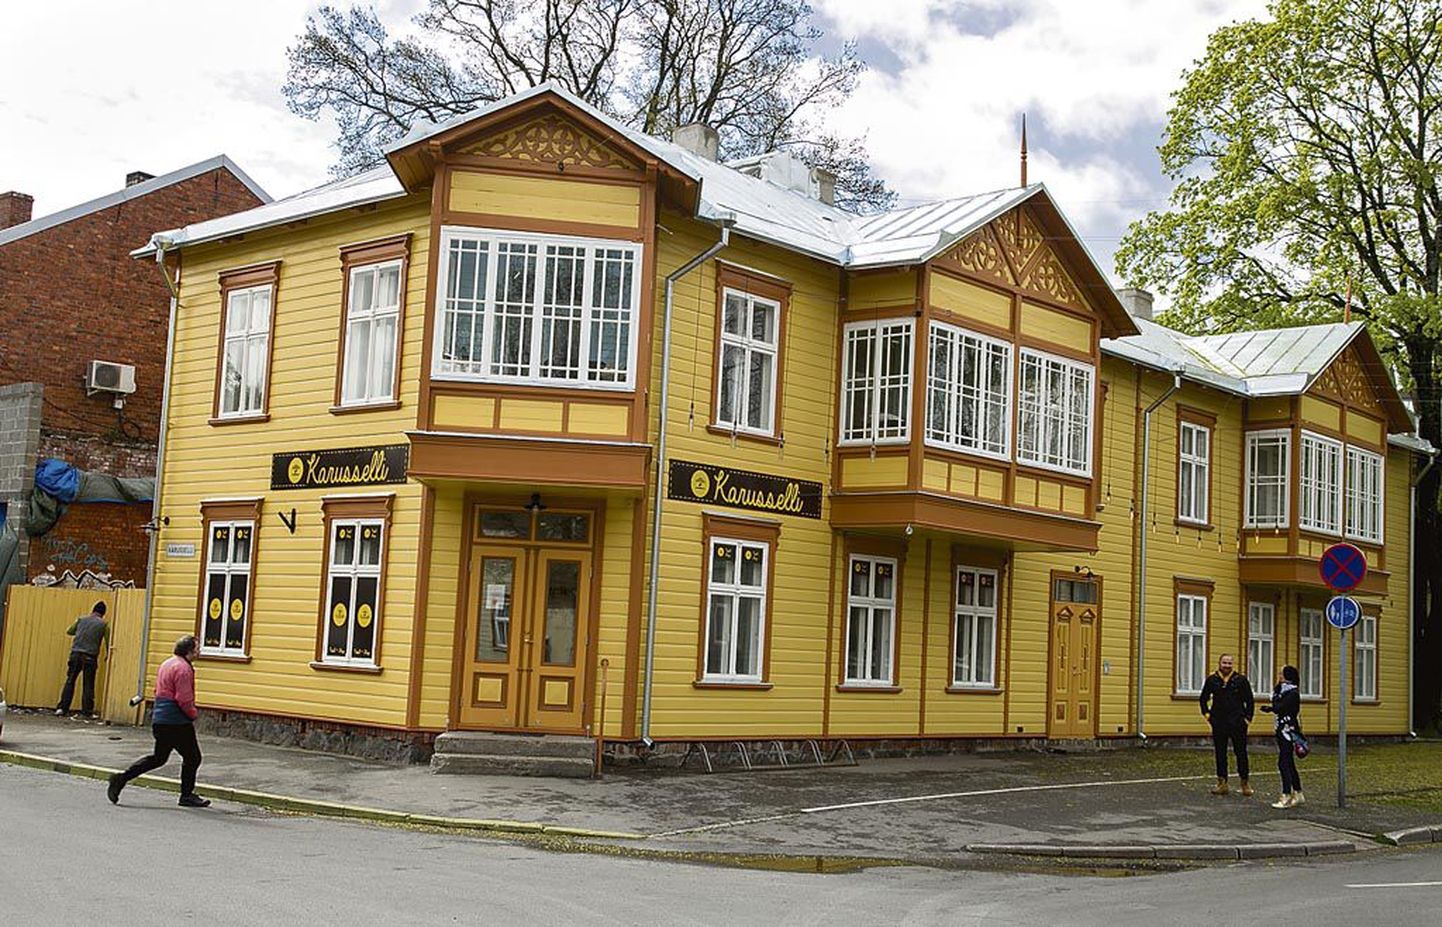 Kollase värvi omandanud Karusselli poe maja on teinud mõne aasta taguse ajaga võrreldes läbi silmanähtava muutuse paremuse poole.